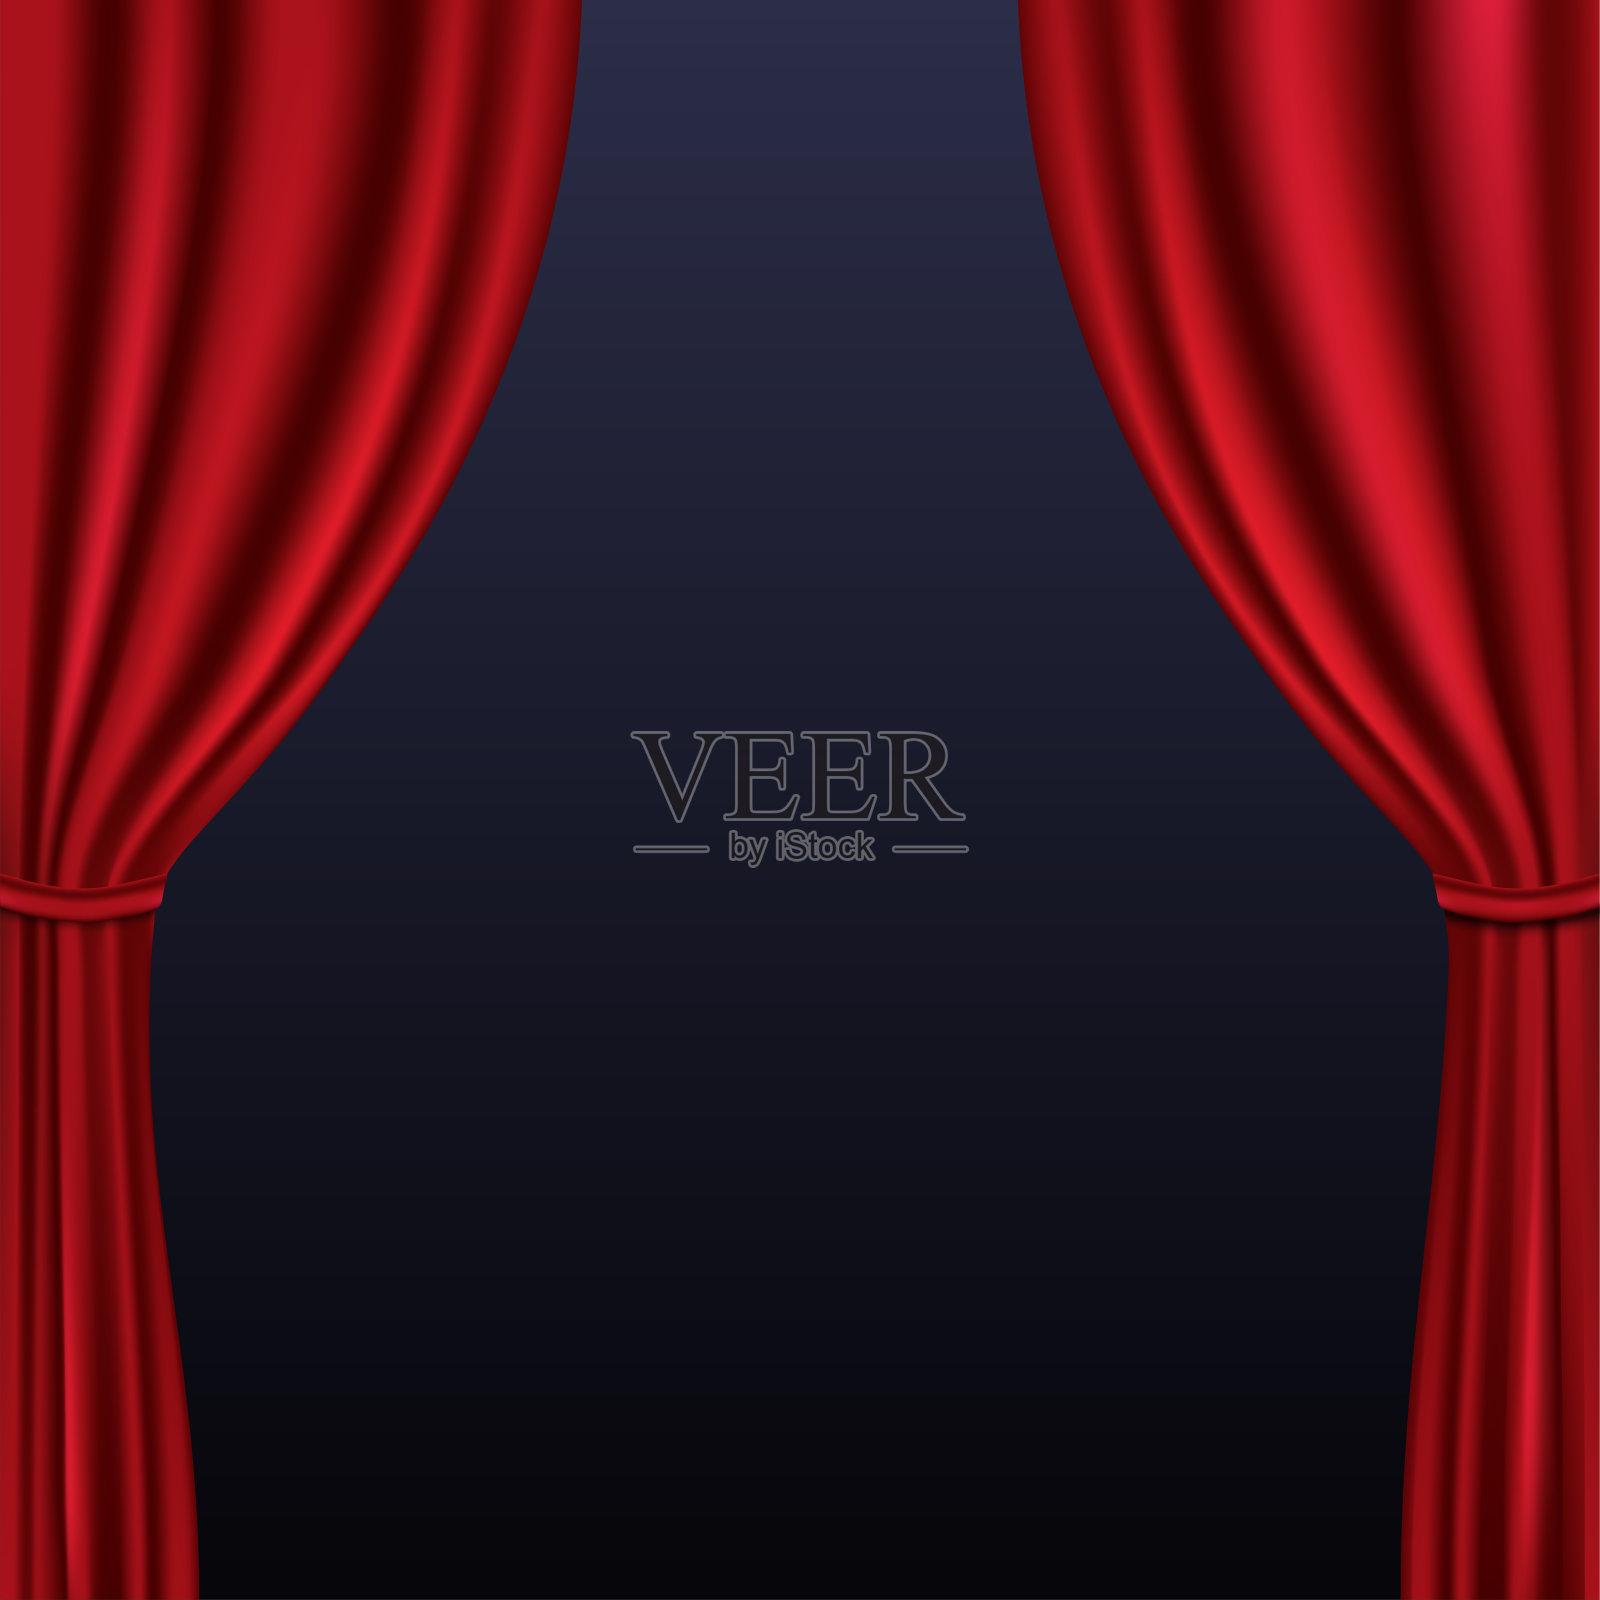 现实的彩色红色天鹅绒窗帘折叠的背景。在电影院里选择幕布。矢量插图。EPS10插画图片素材